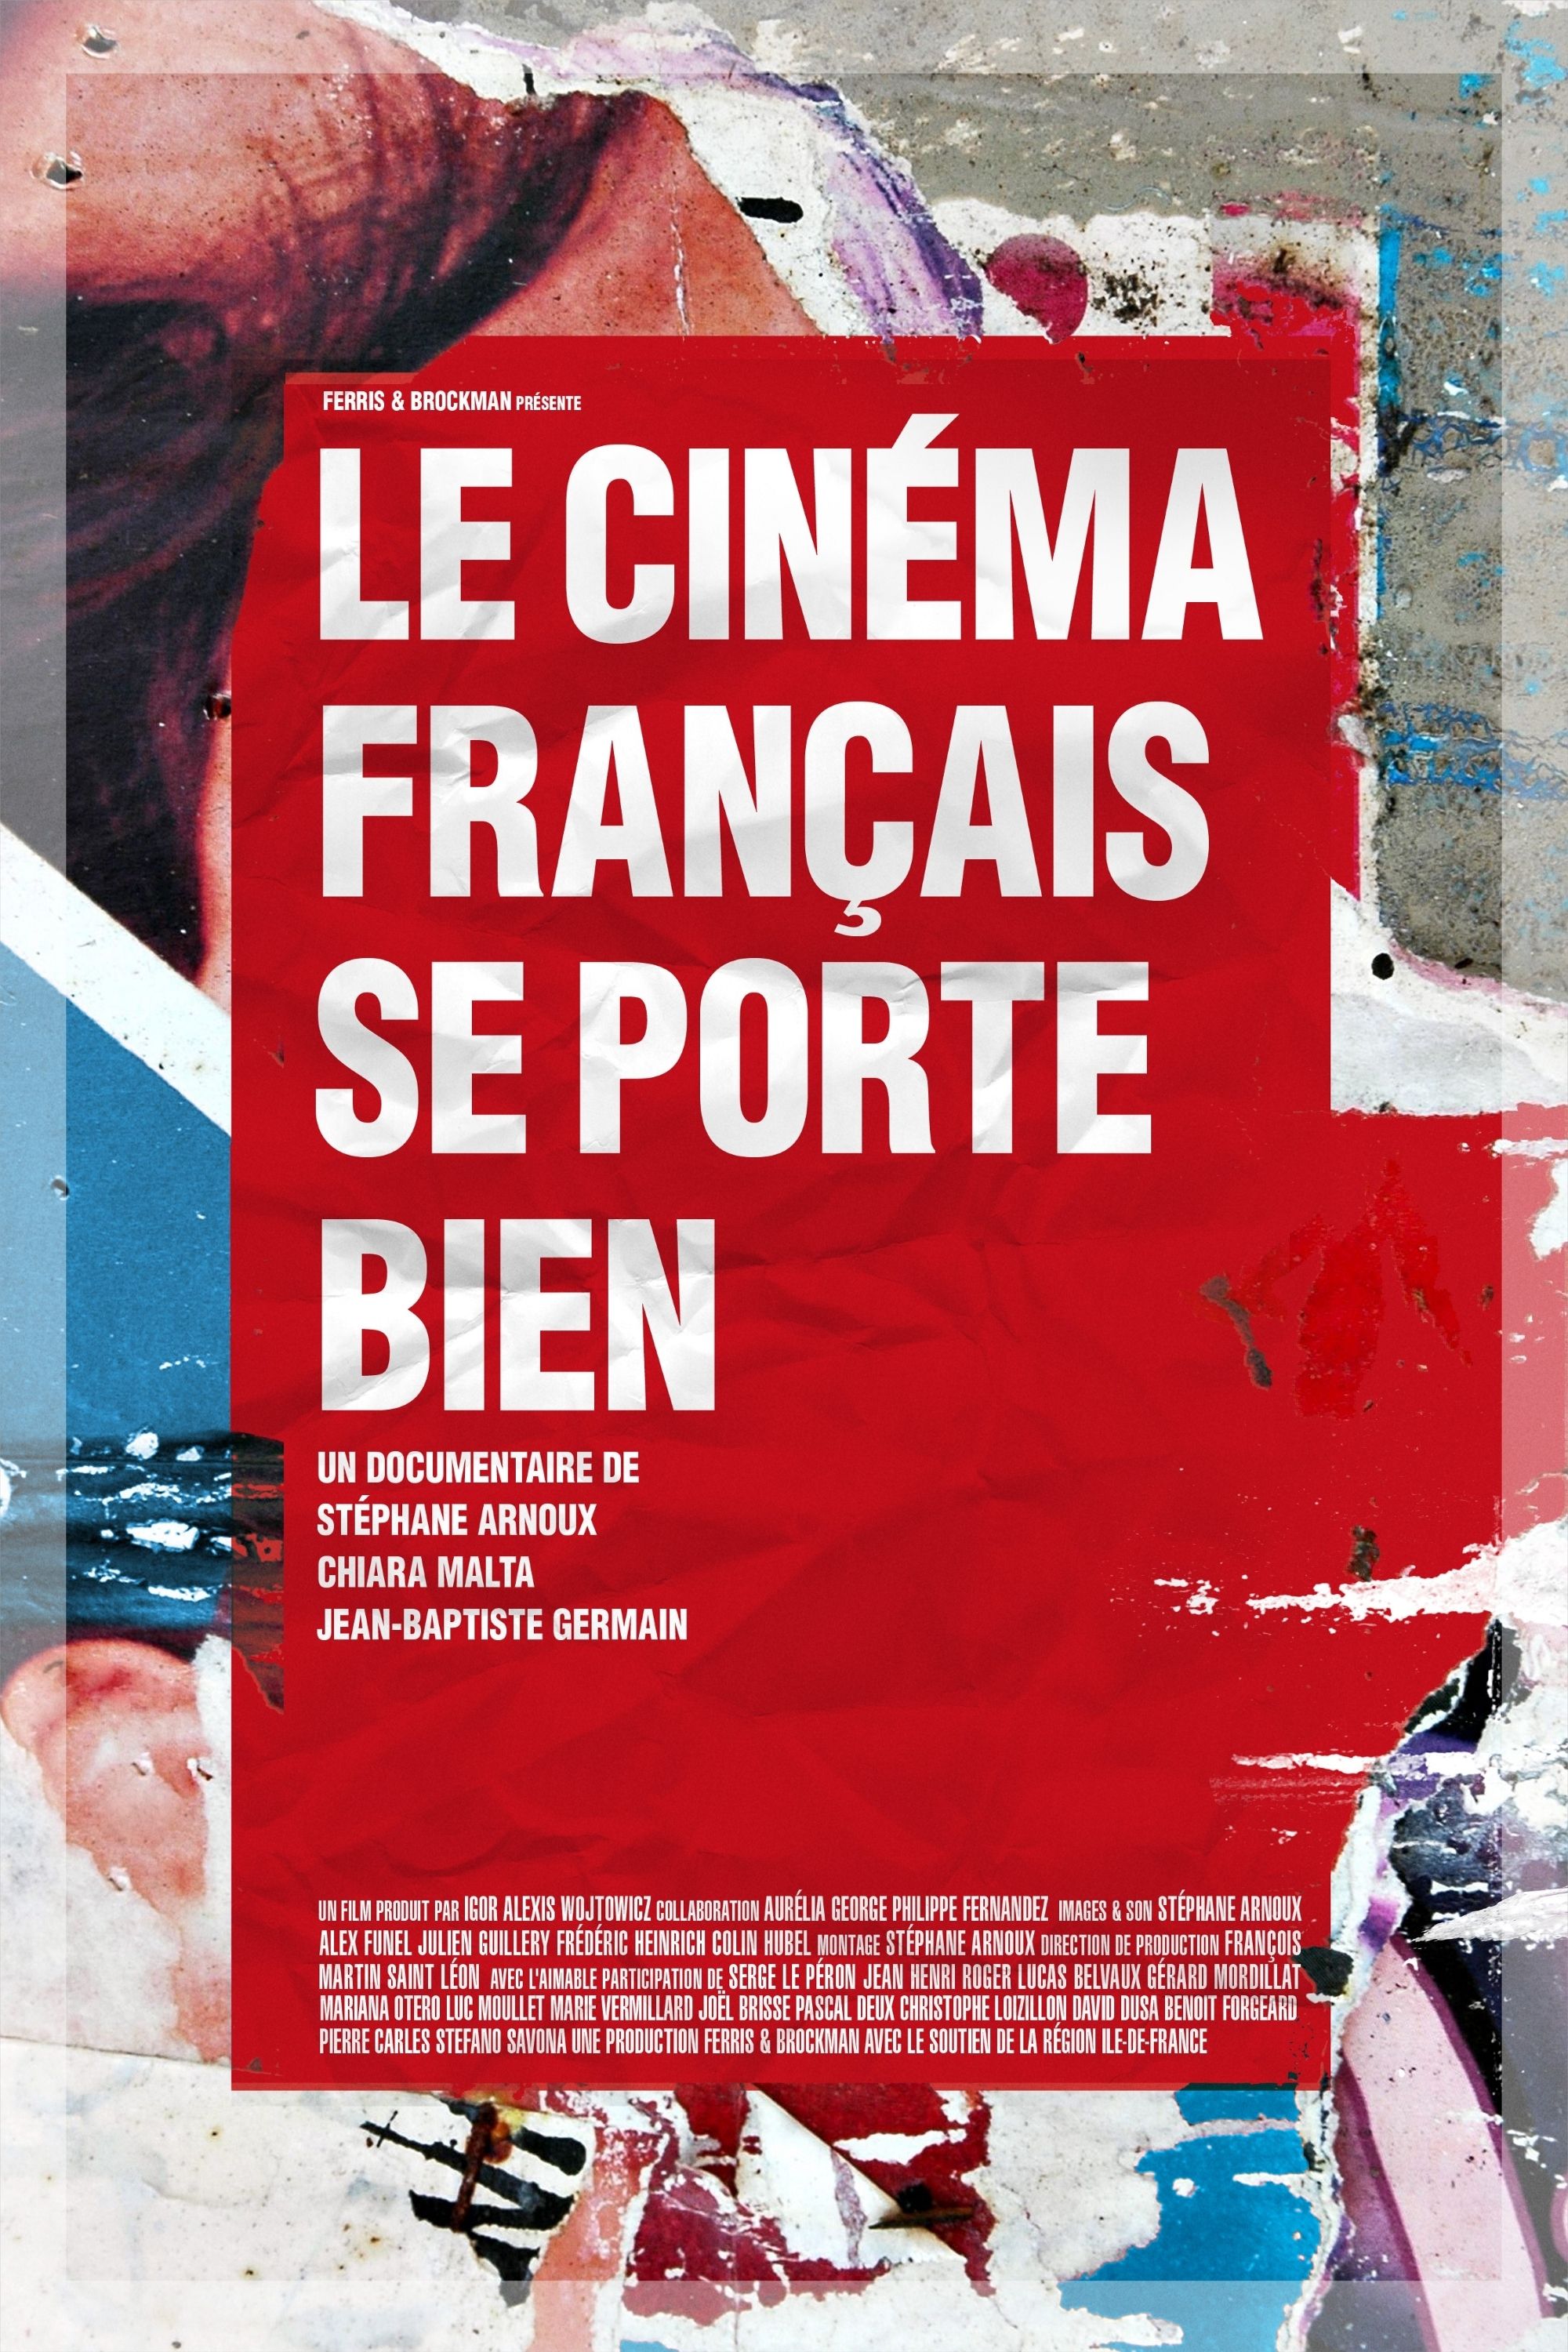 Le Cinéma français se porte bien - Documentaire (2014)